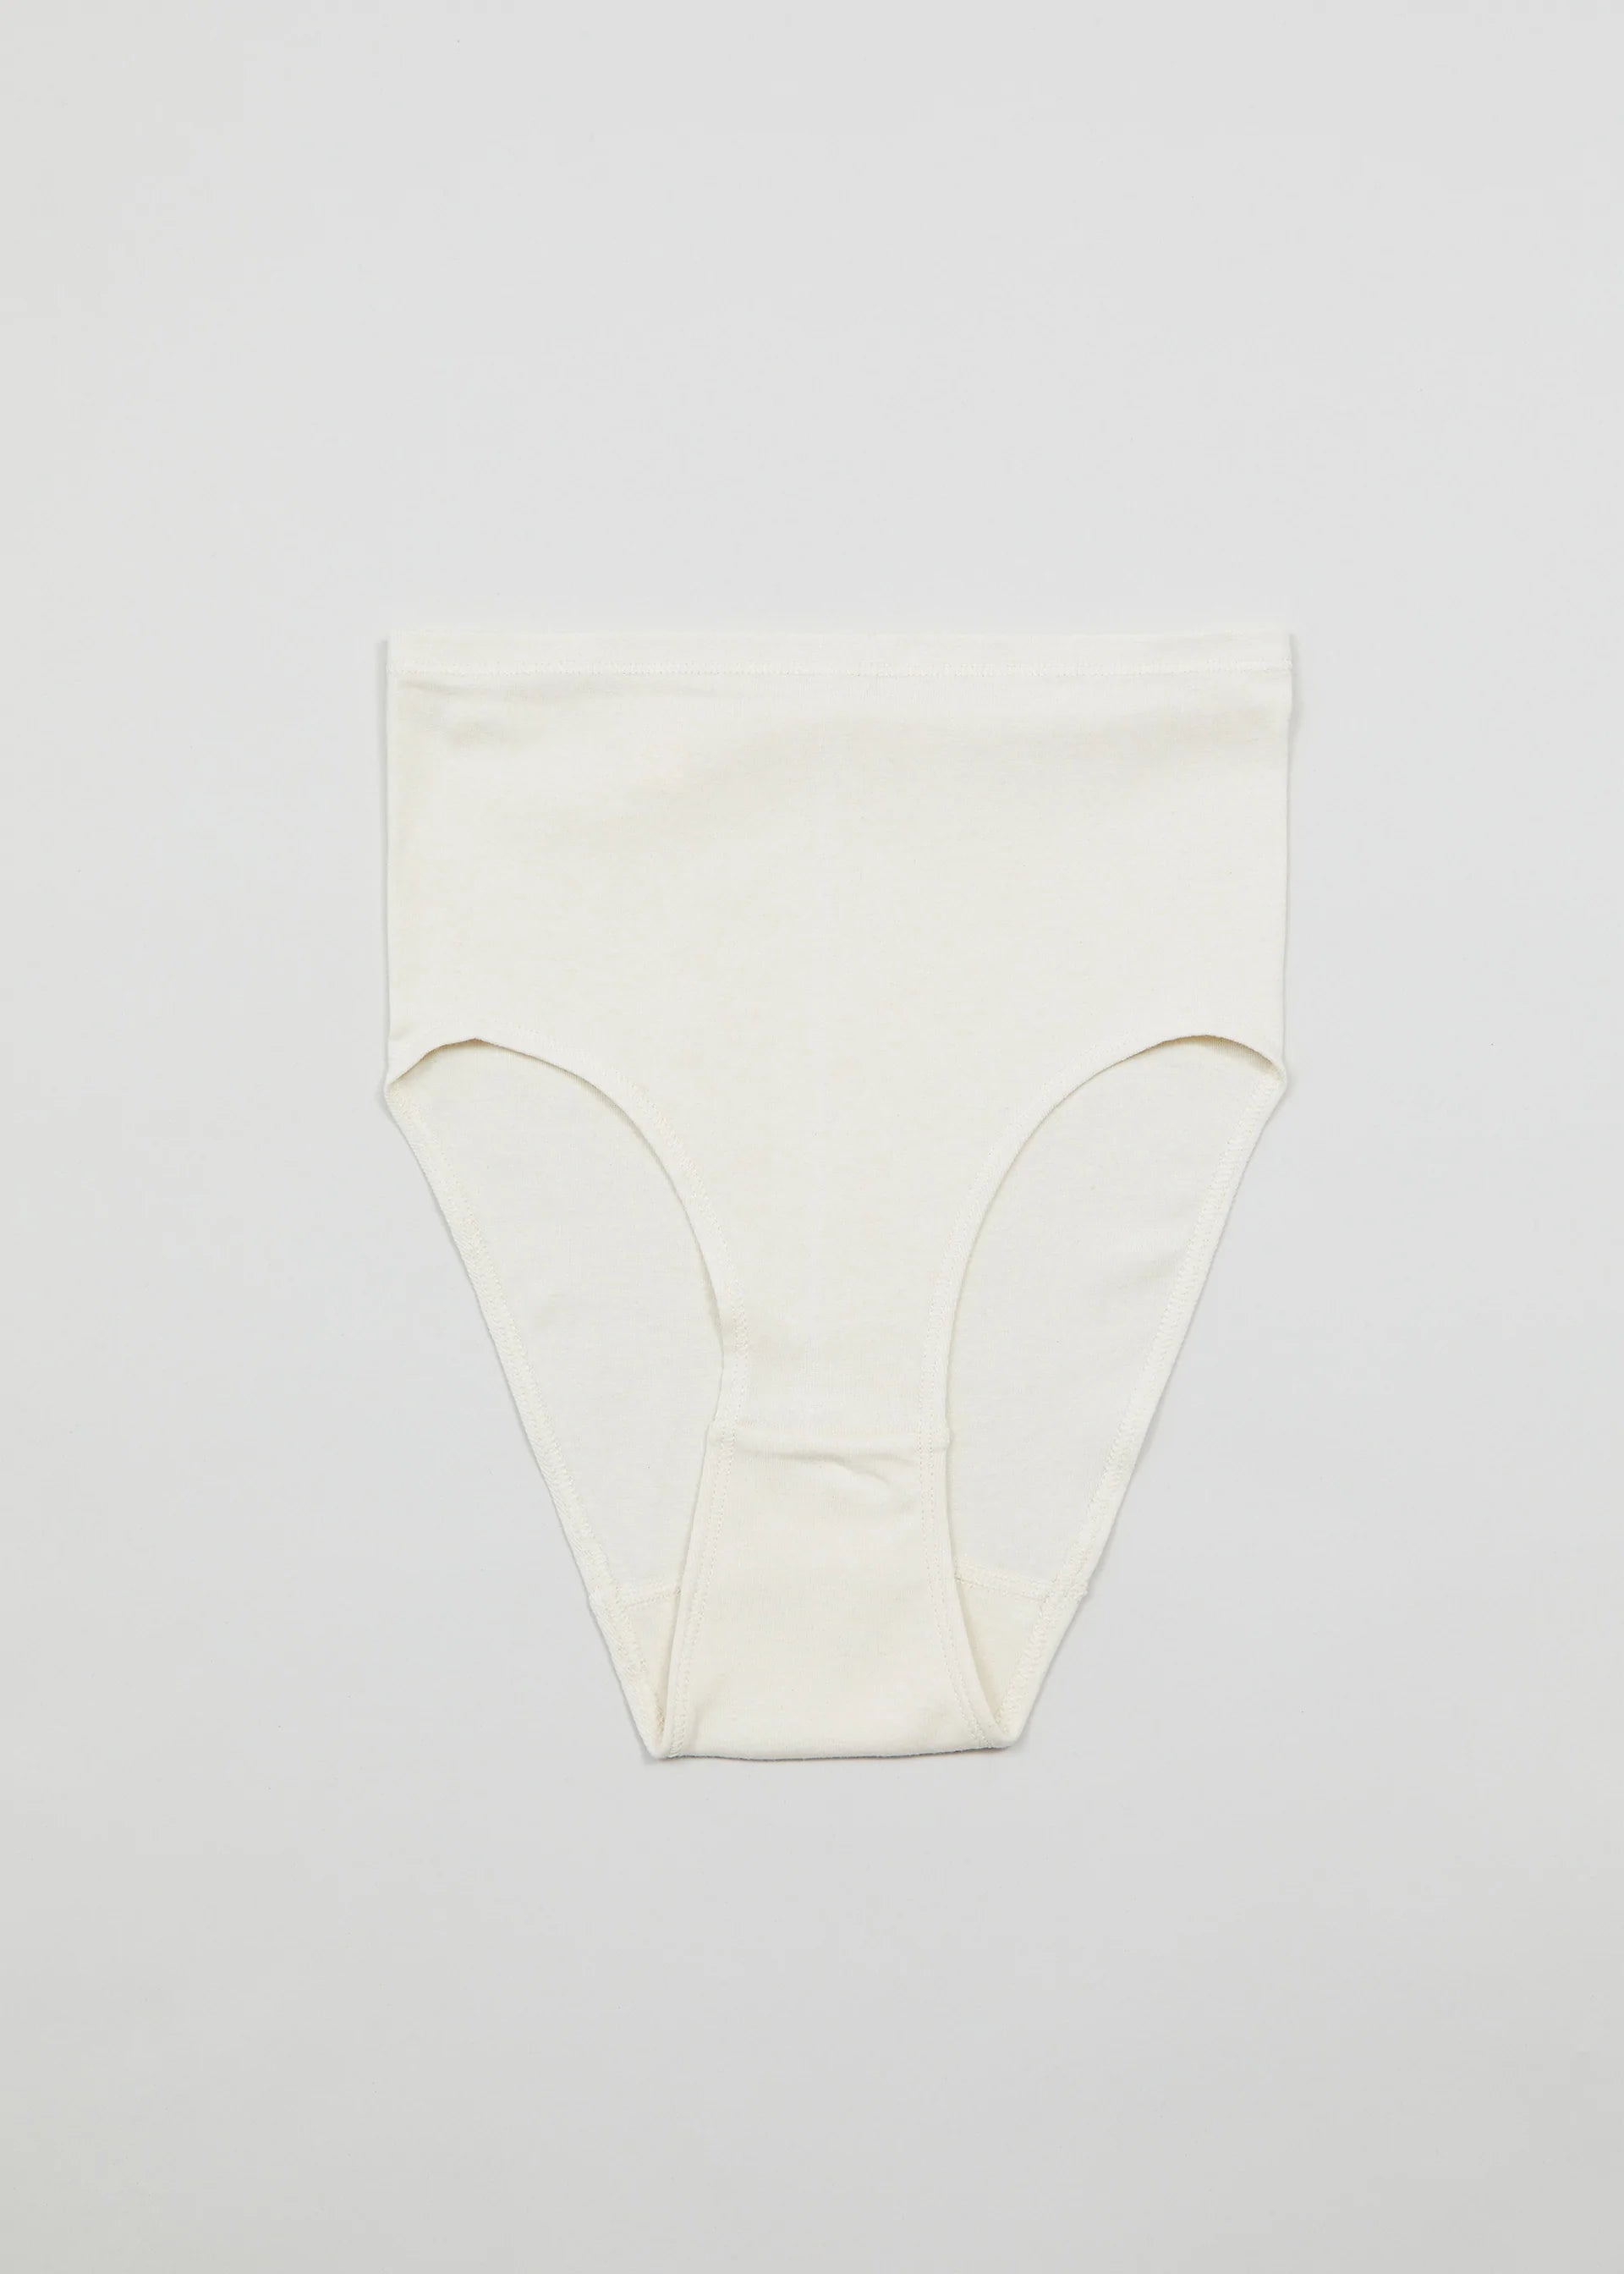 ecoland women organic cotton hi cut brief underwear from